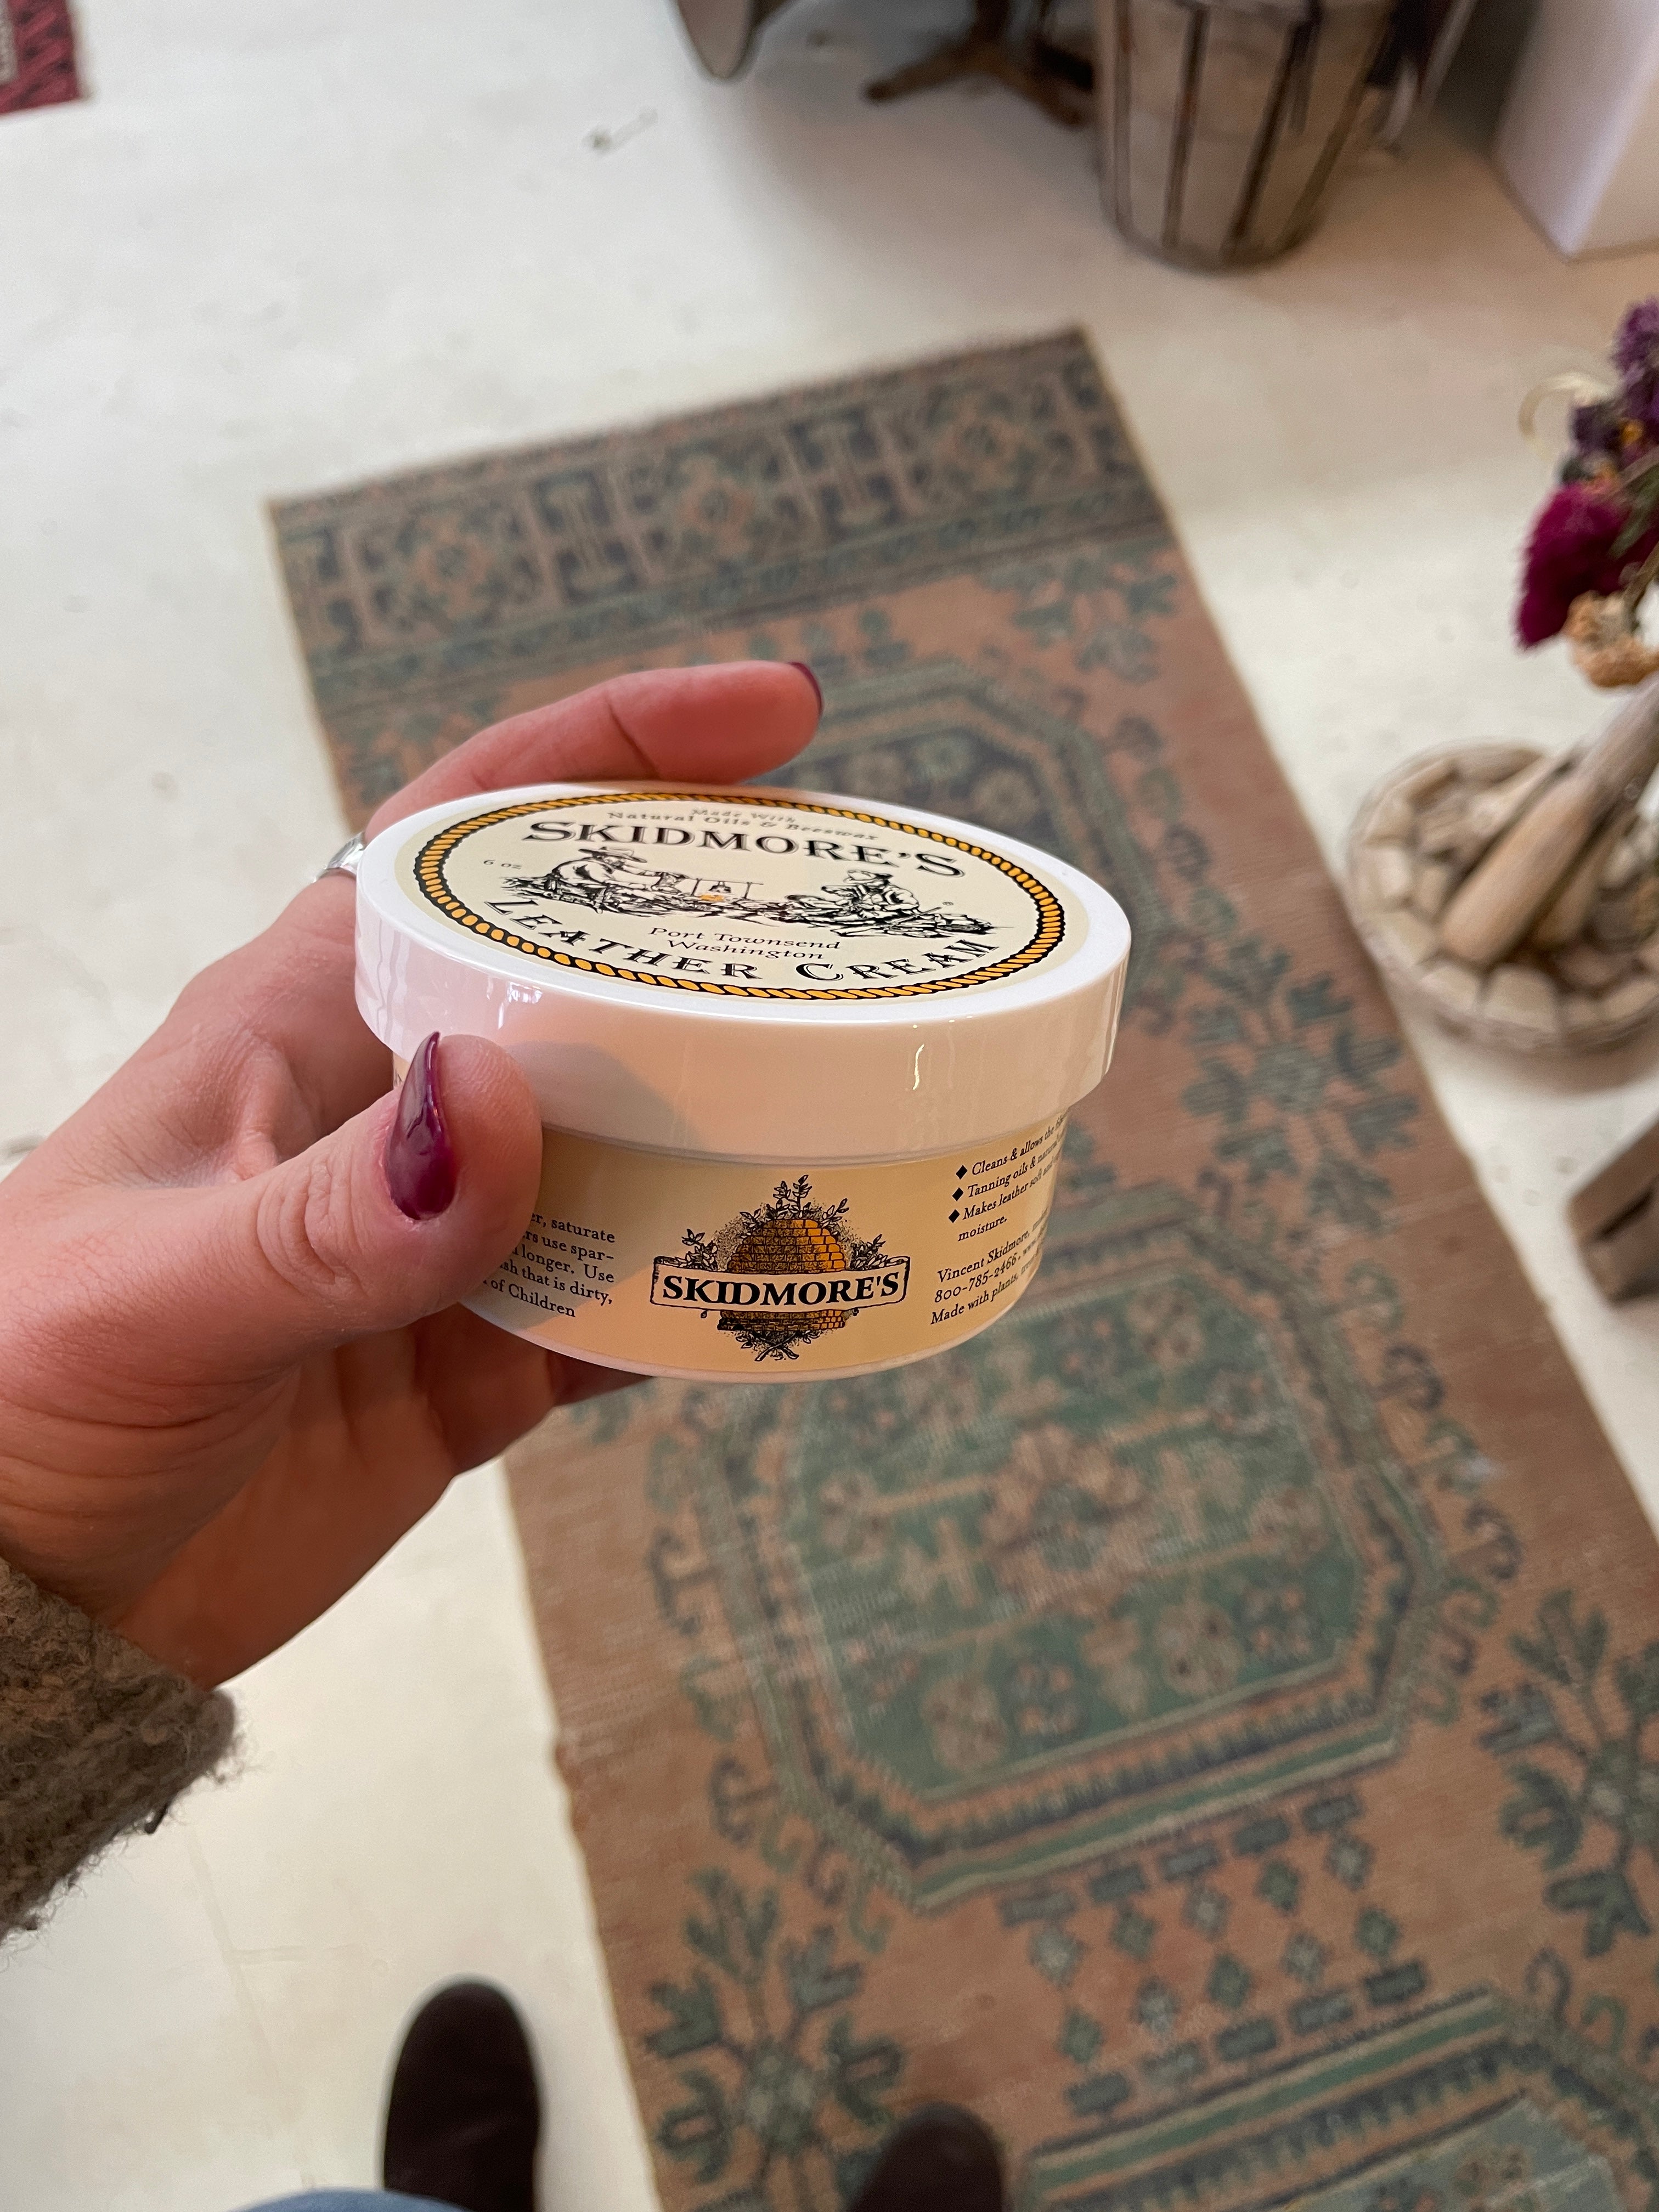 Skidmore's Leather Cream